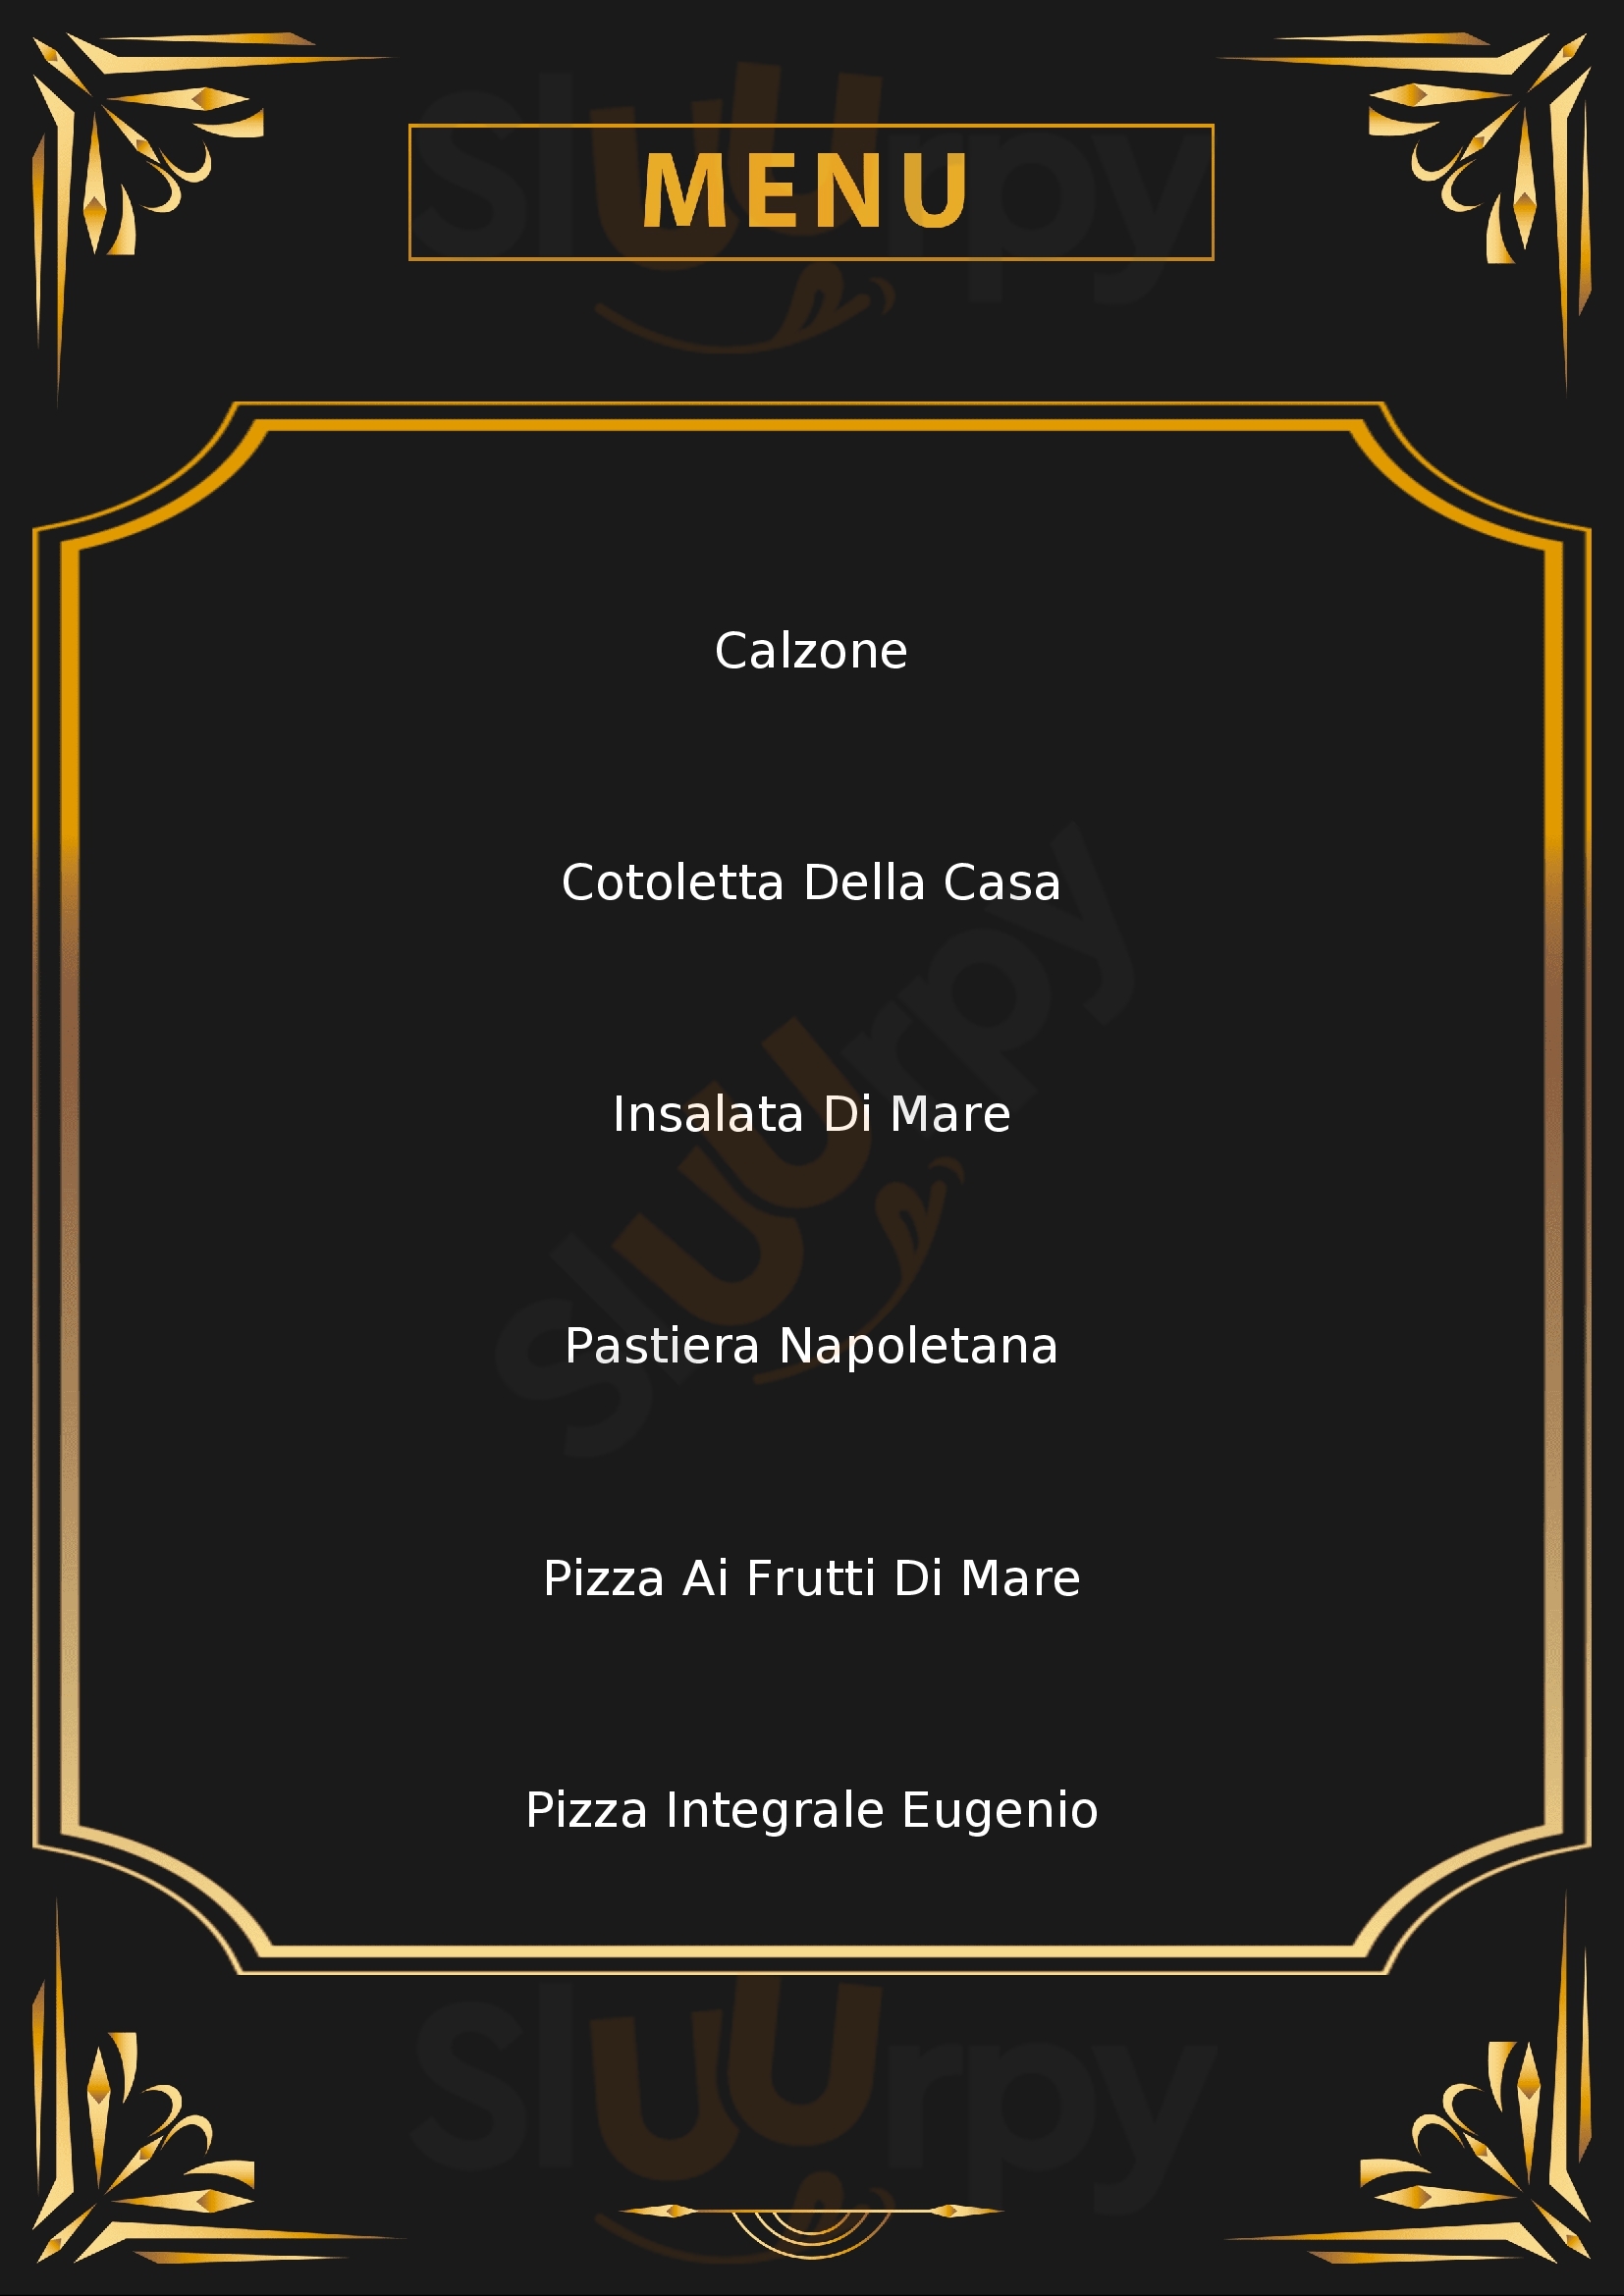 Ristorante Pizzeria Santa Lucia Casale Monferrato menù 1 pagina